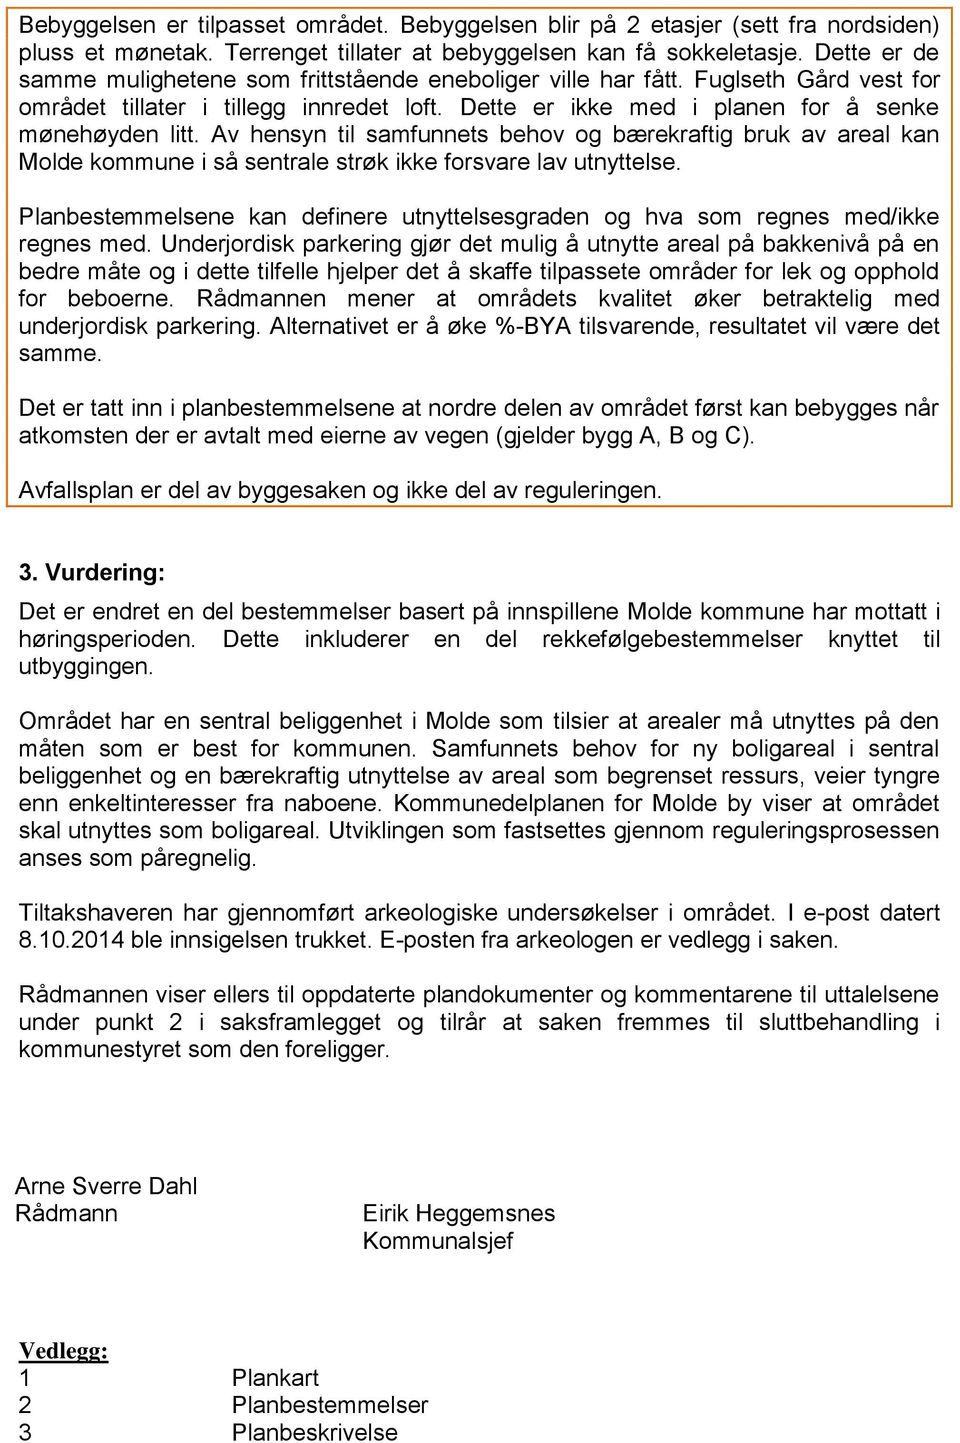 Av hensyn til samfunnets behov og bærekraftig bruk av areal kan Molde kommune i så sentrale strøk ikke forsvare lav utnyttelse.